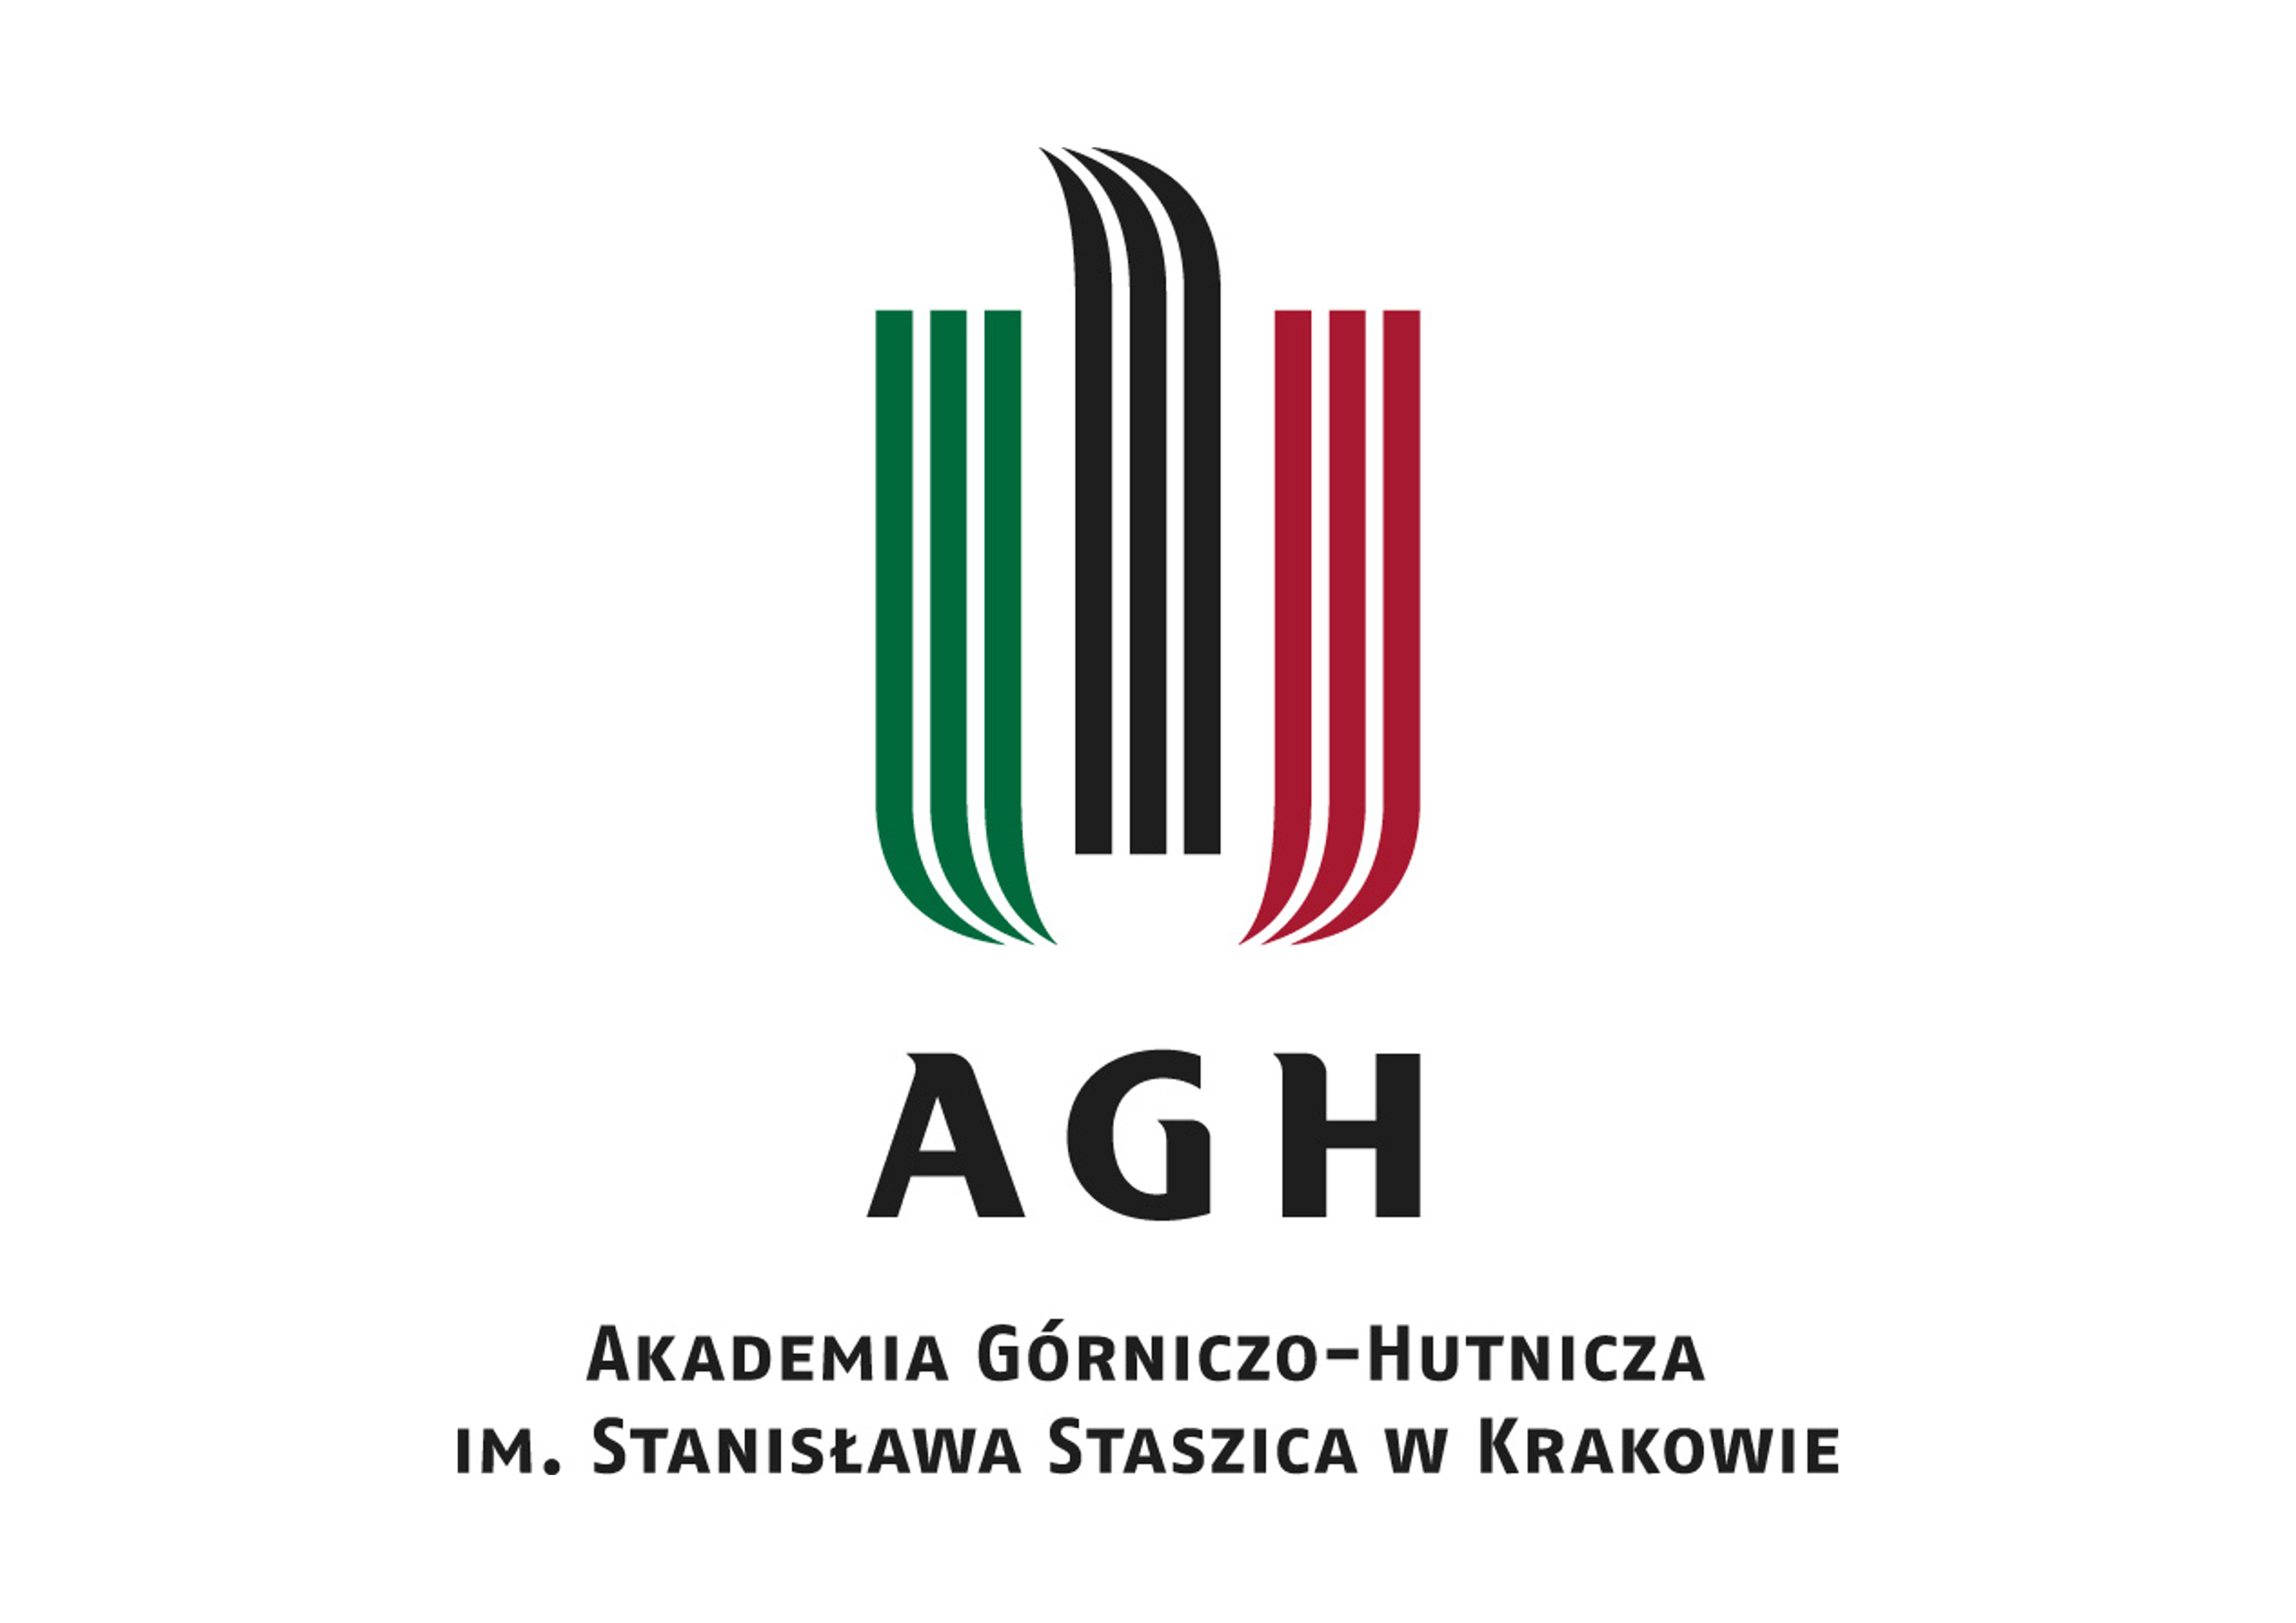 Akademia Górniczo-Hutnicza